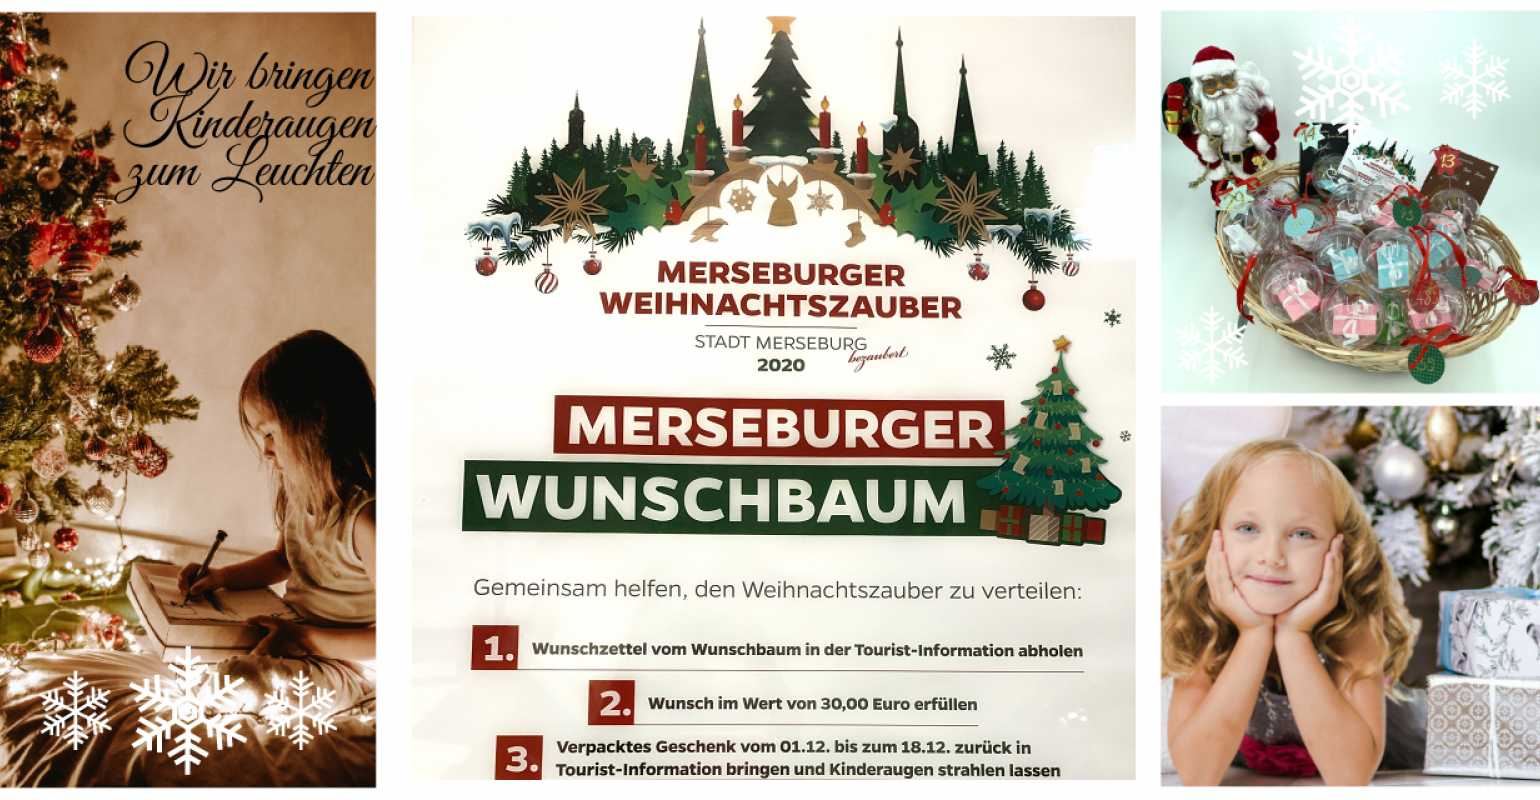 Merseburger Wunschbaum